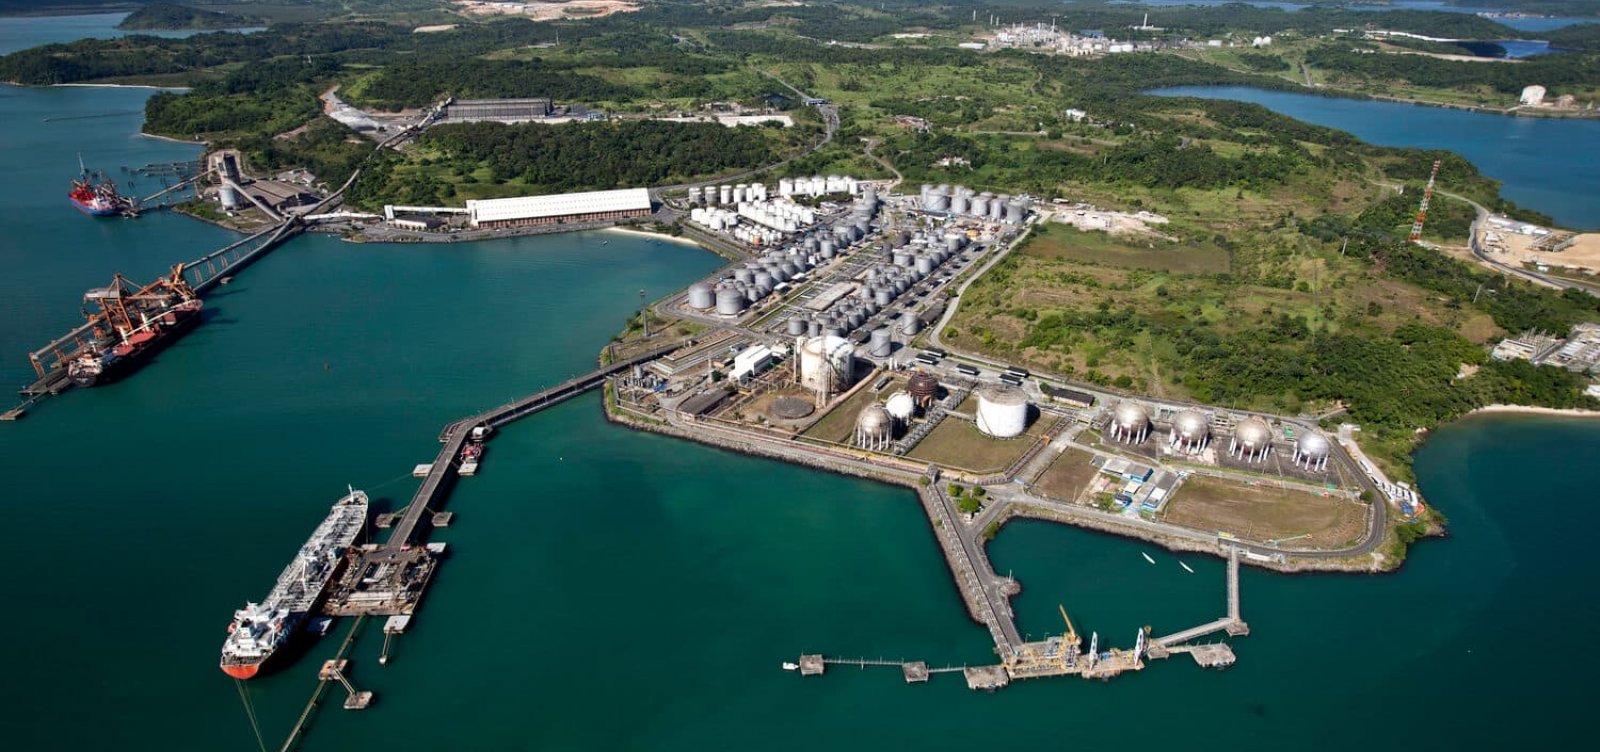 Biólogo explica riscos de vazamento de gás no Porto de Aratu: "Poderia trazer prejuízos imensuráveis para o meio ambiente"